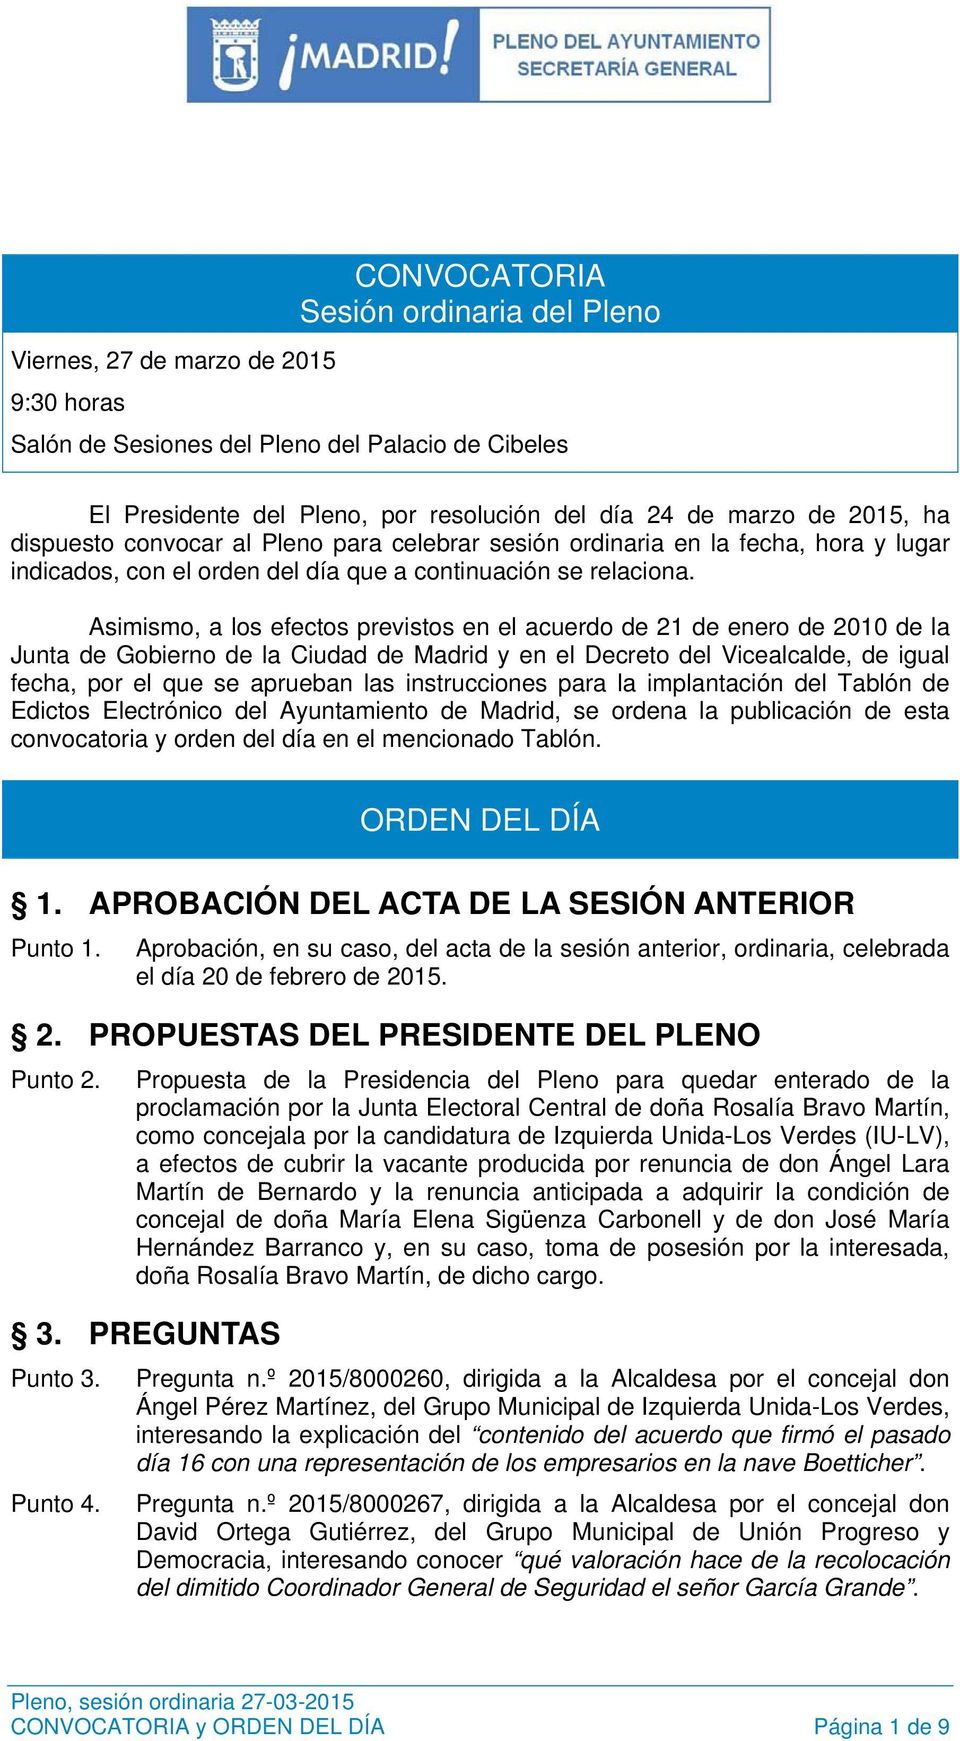 Asimismo, a los efectos previstos en el acuerdo de 21 de enero de 2010 de la Junta de Gobierno de la Ciudad de Madrid y en el Decreto del Vicealcalde, de igual fecha, por el que se aprueban las